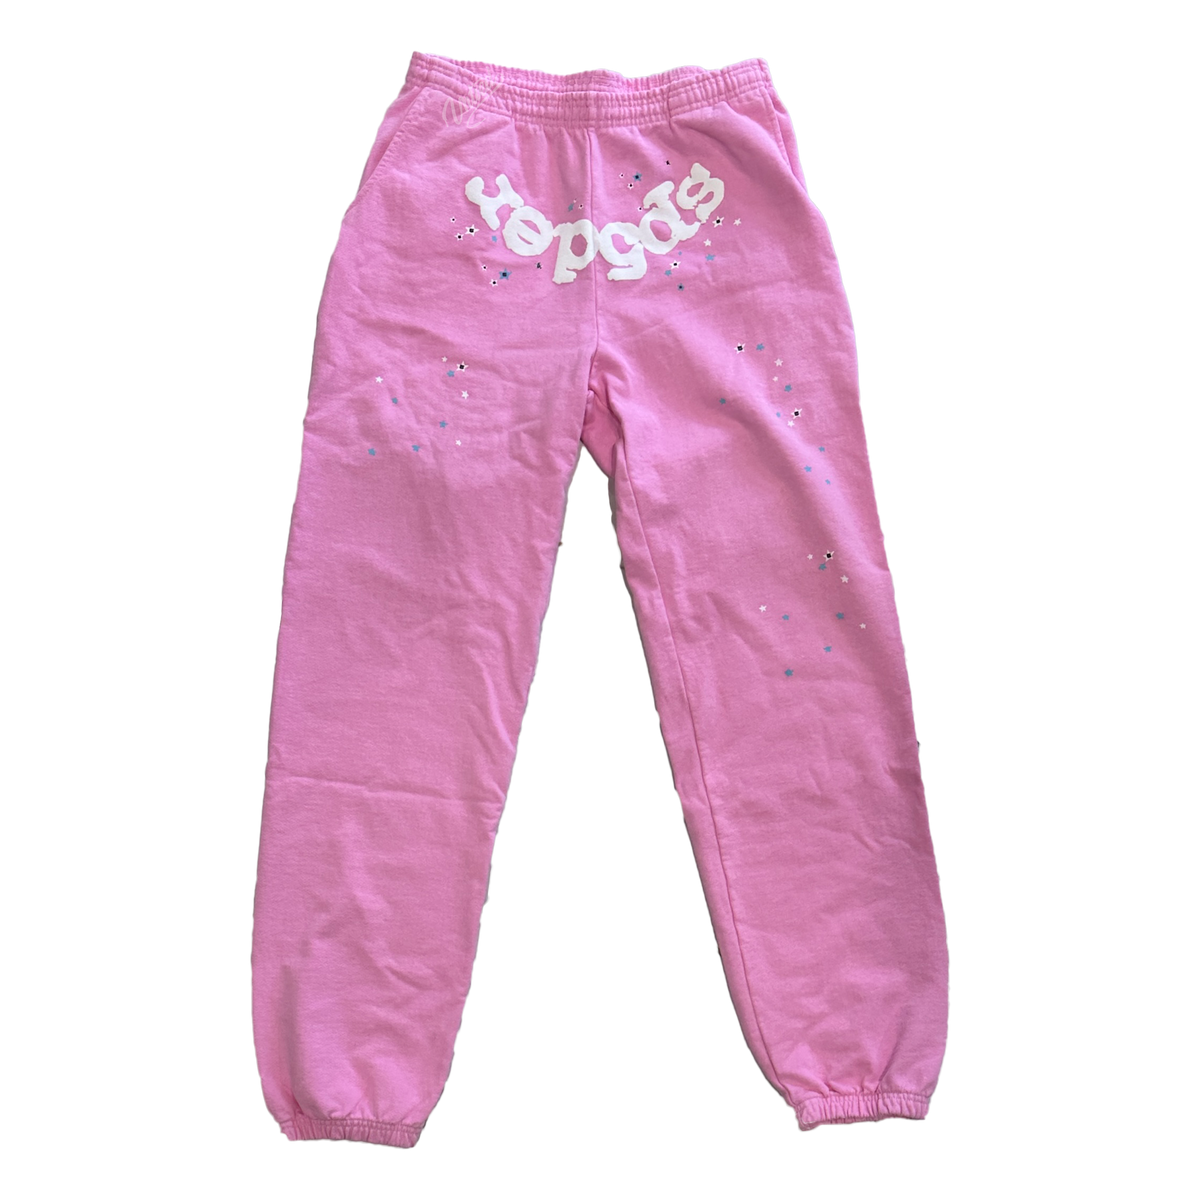 SP5DER OG Web Sweatpants "Pink"